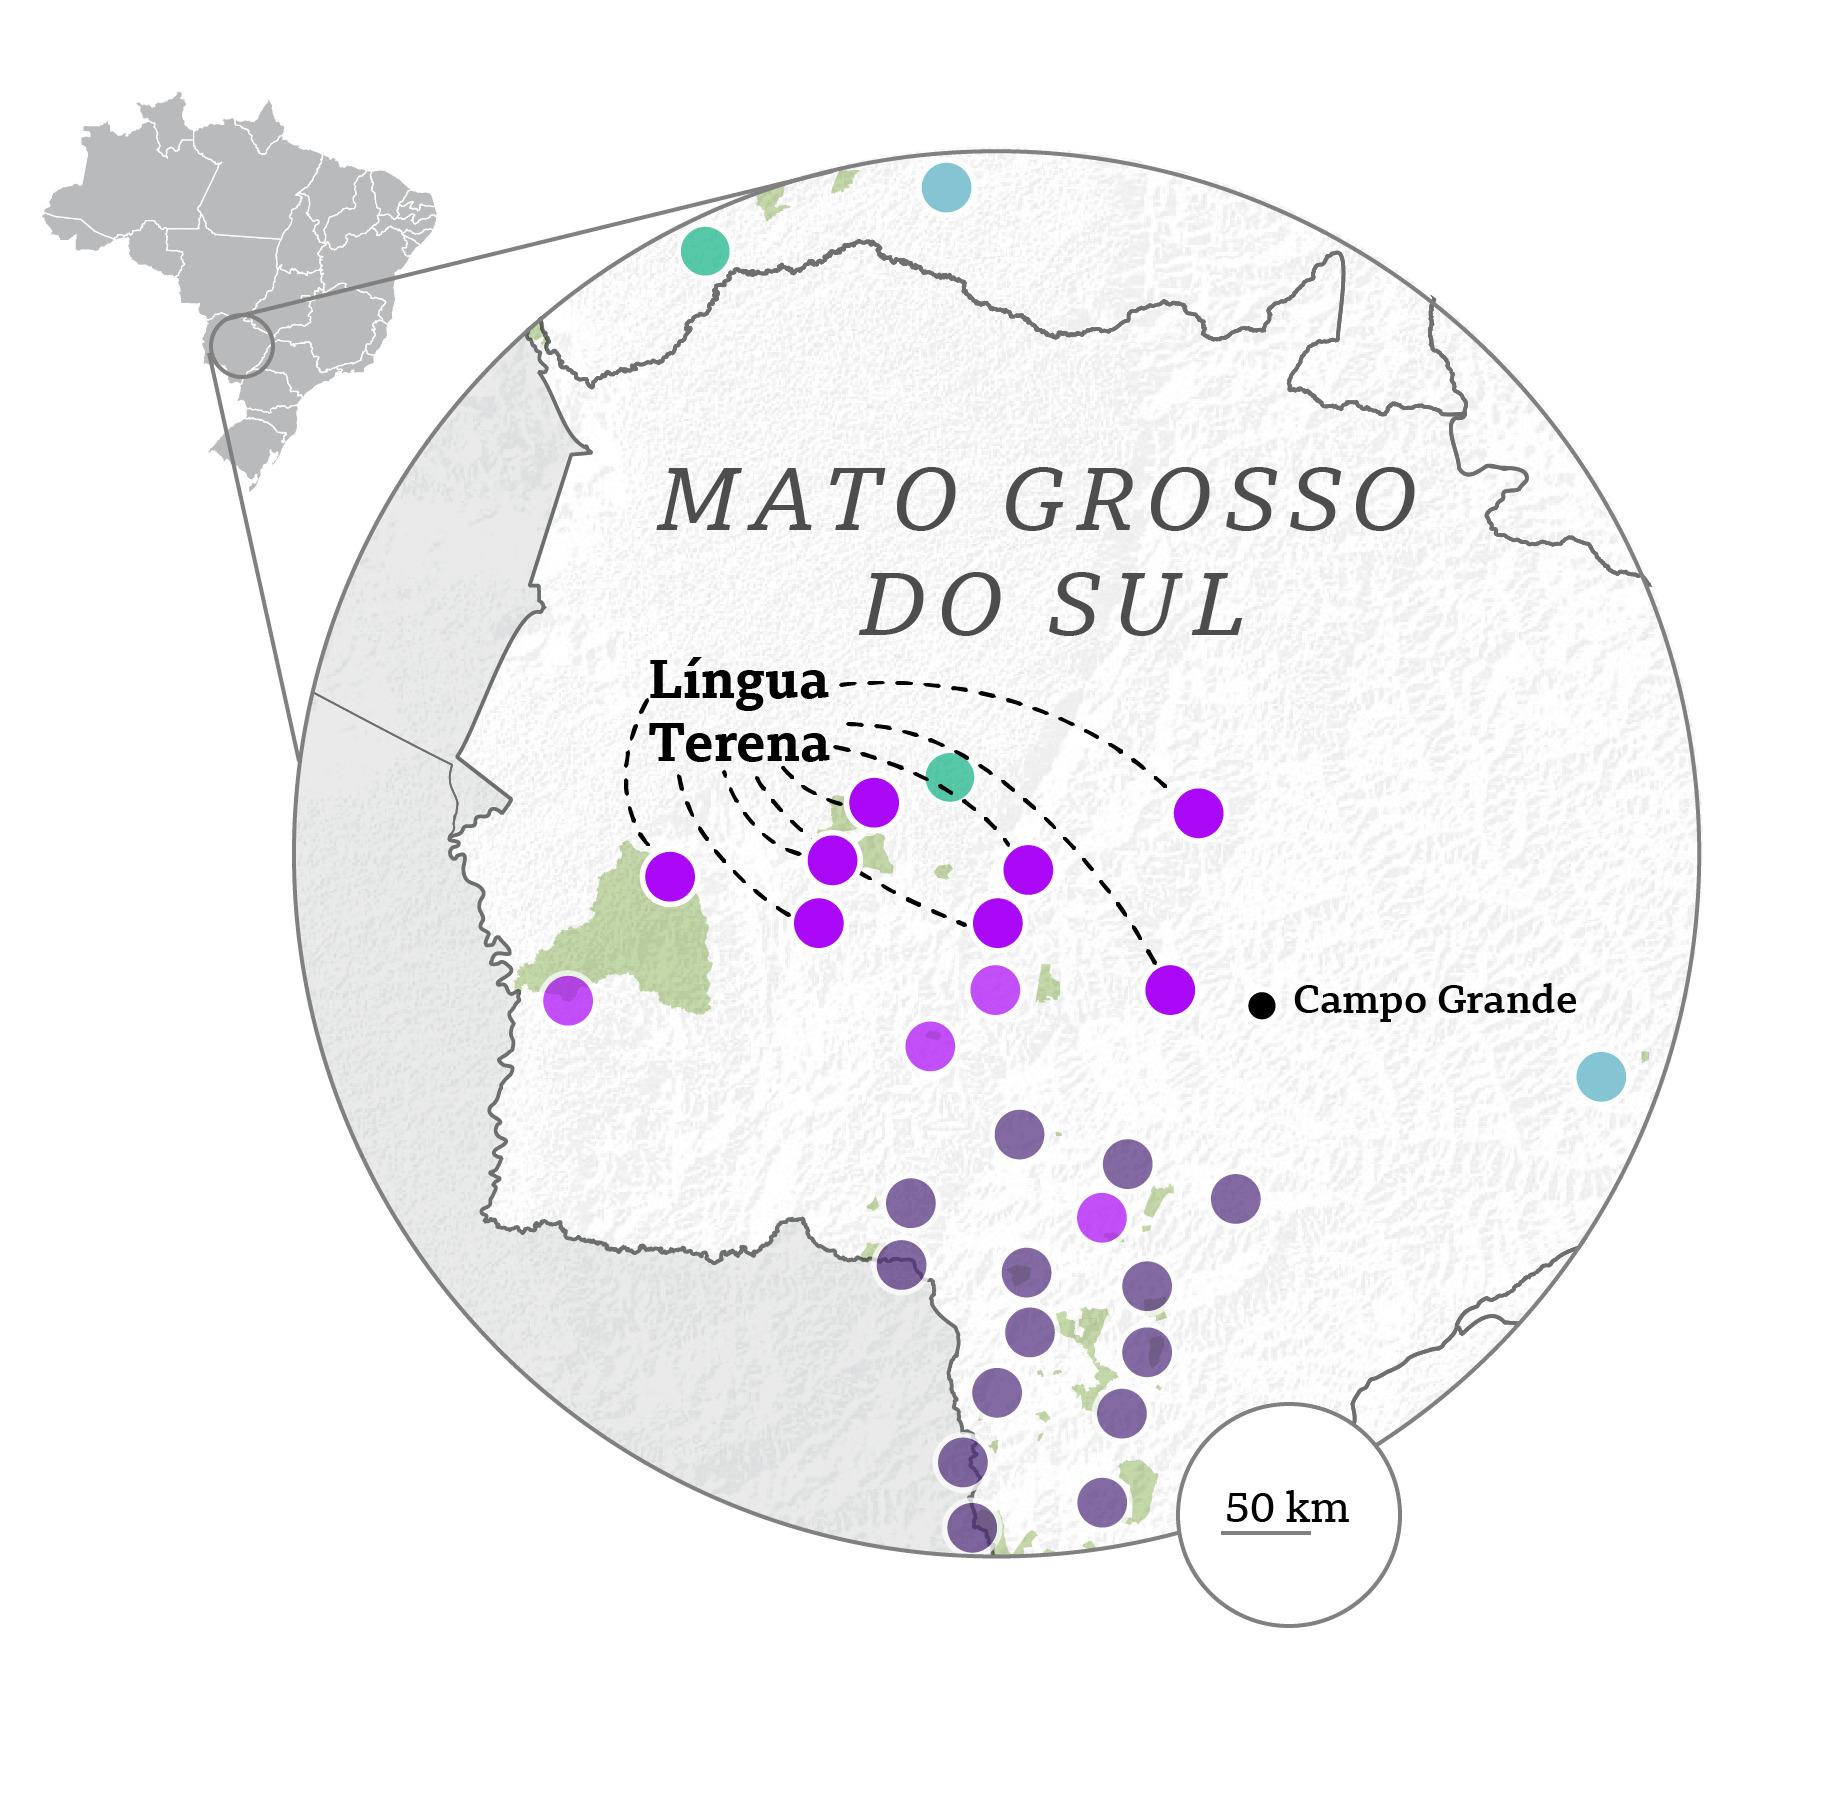 Mapa do Mato Grosso do Sul, principal área onde o terena é falado